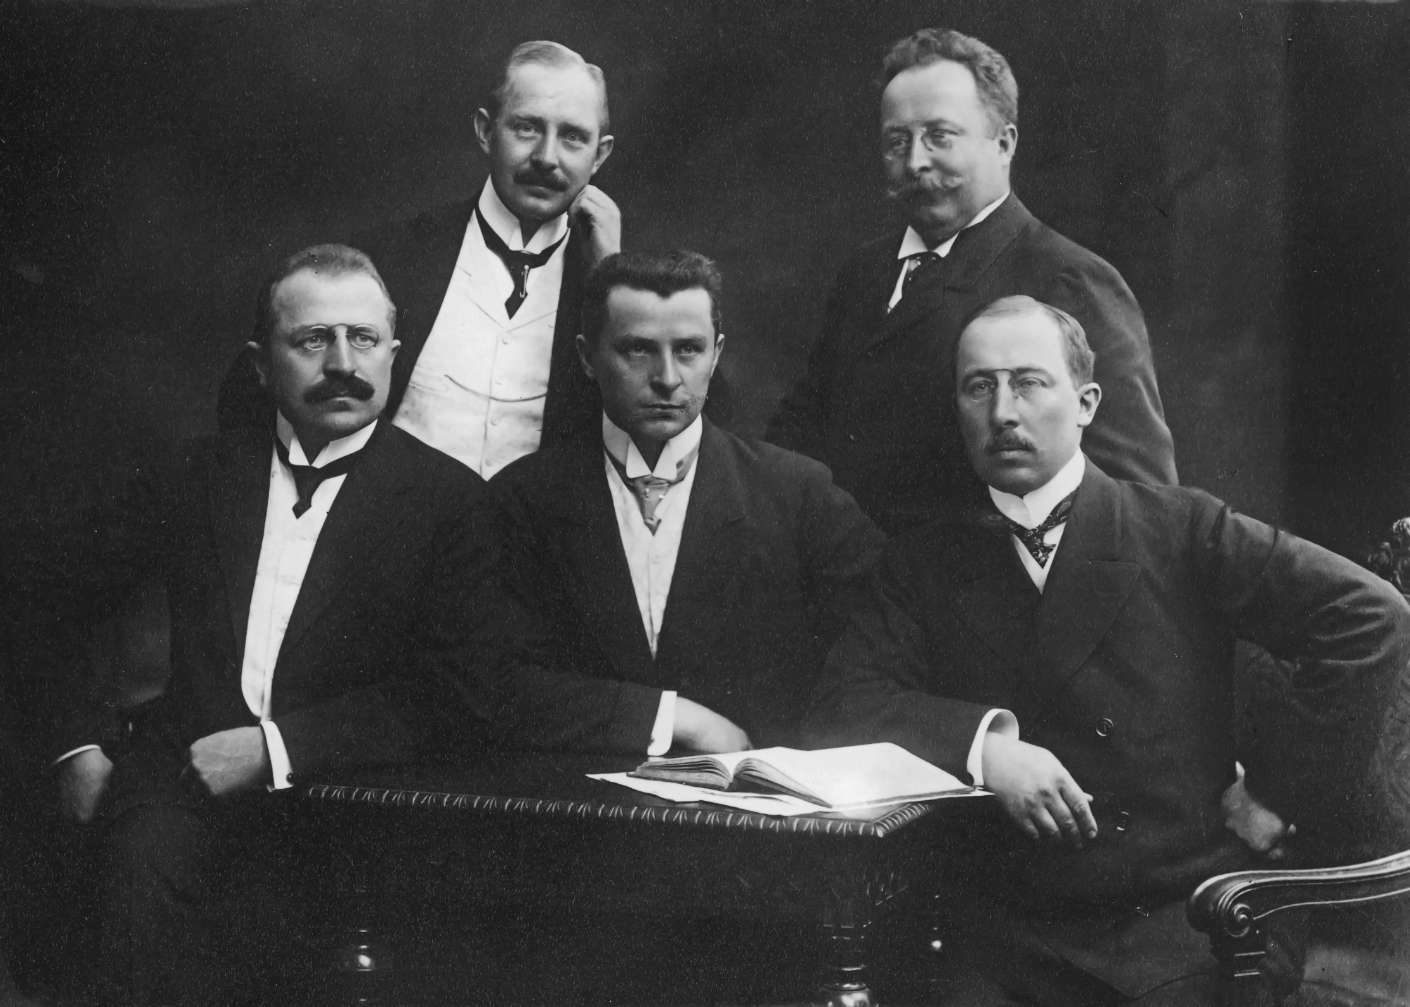 П’ятеро братів Опель приблизно 1912 року